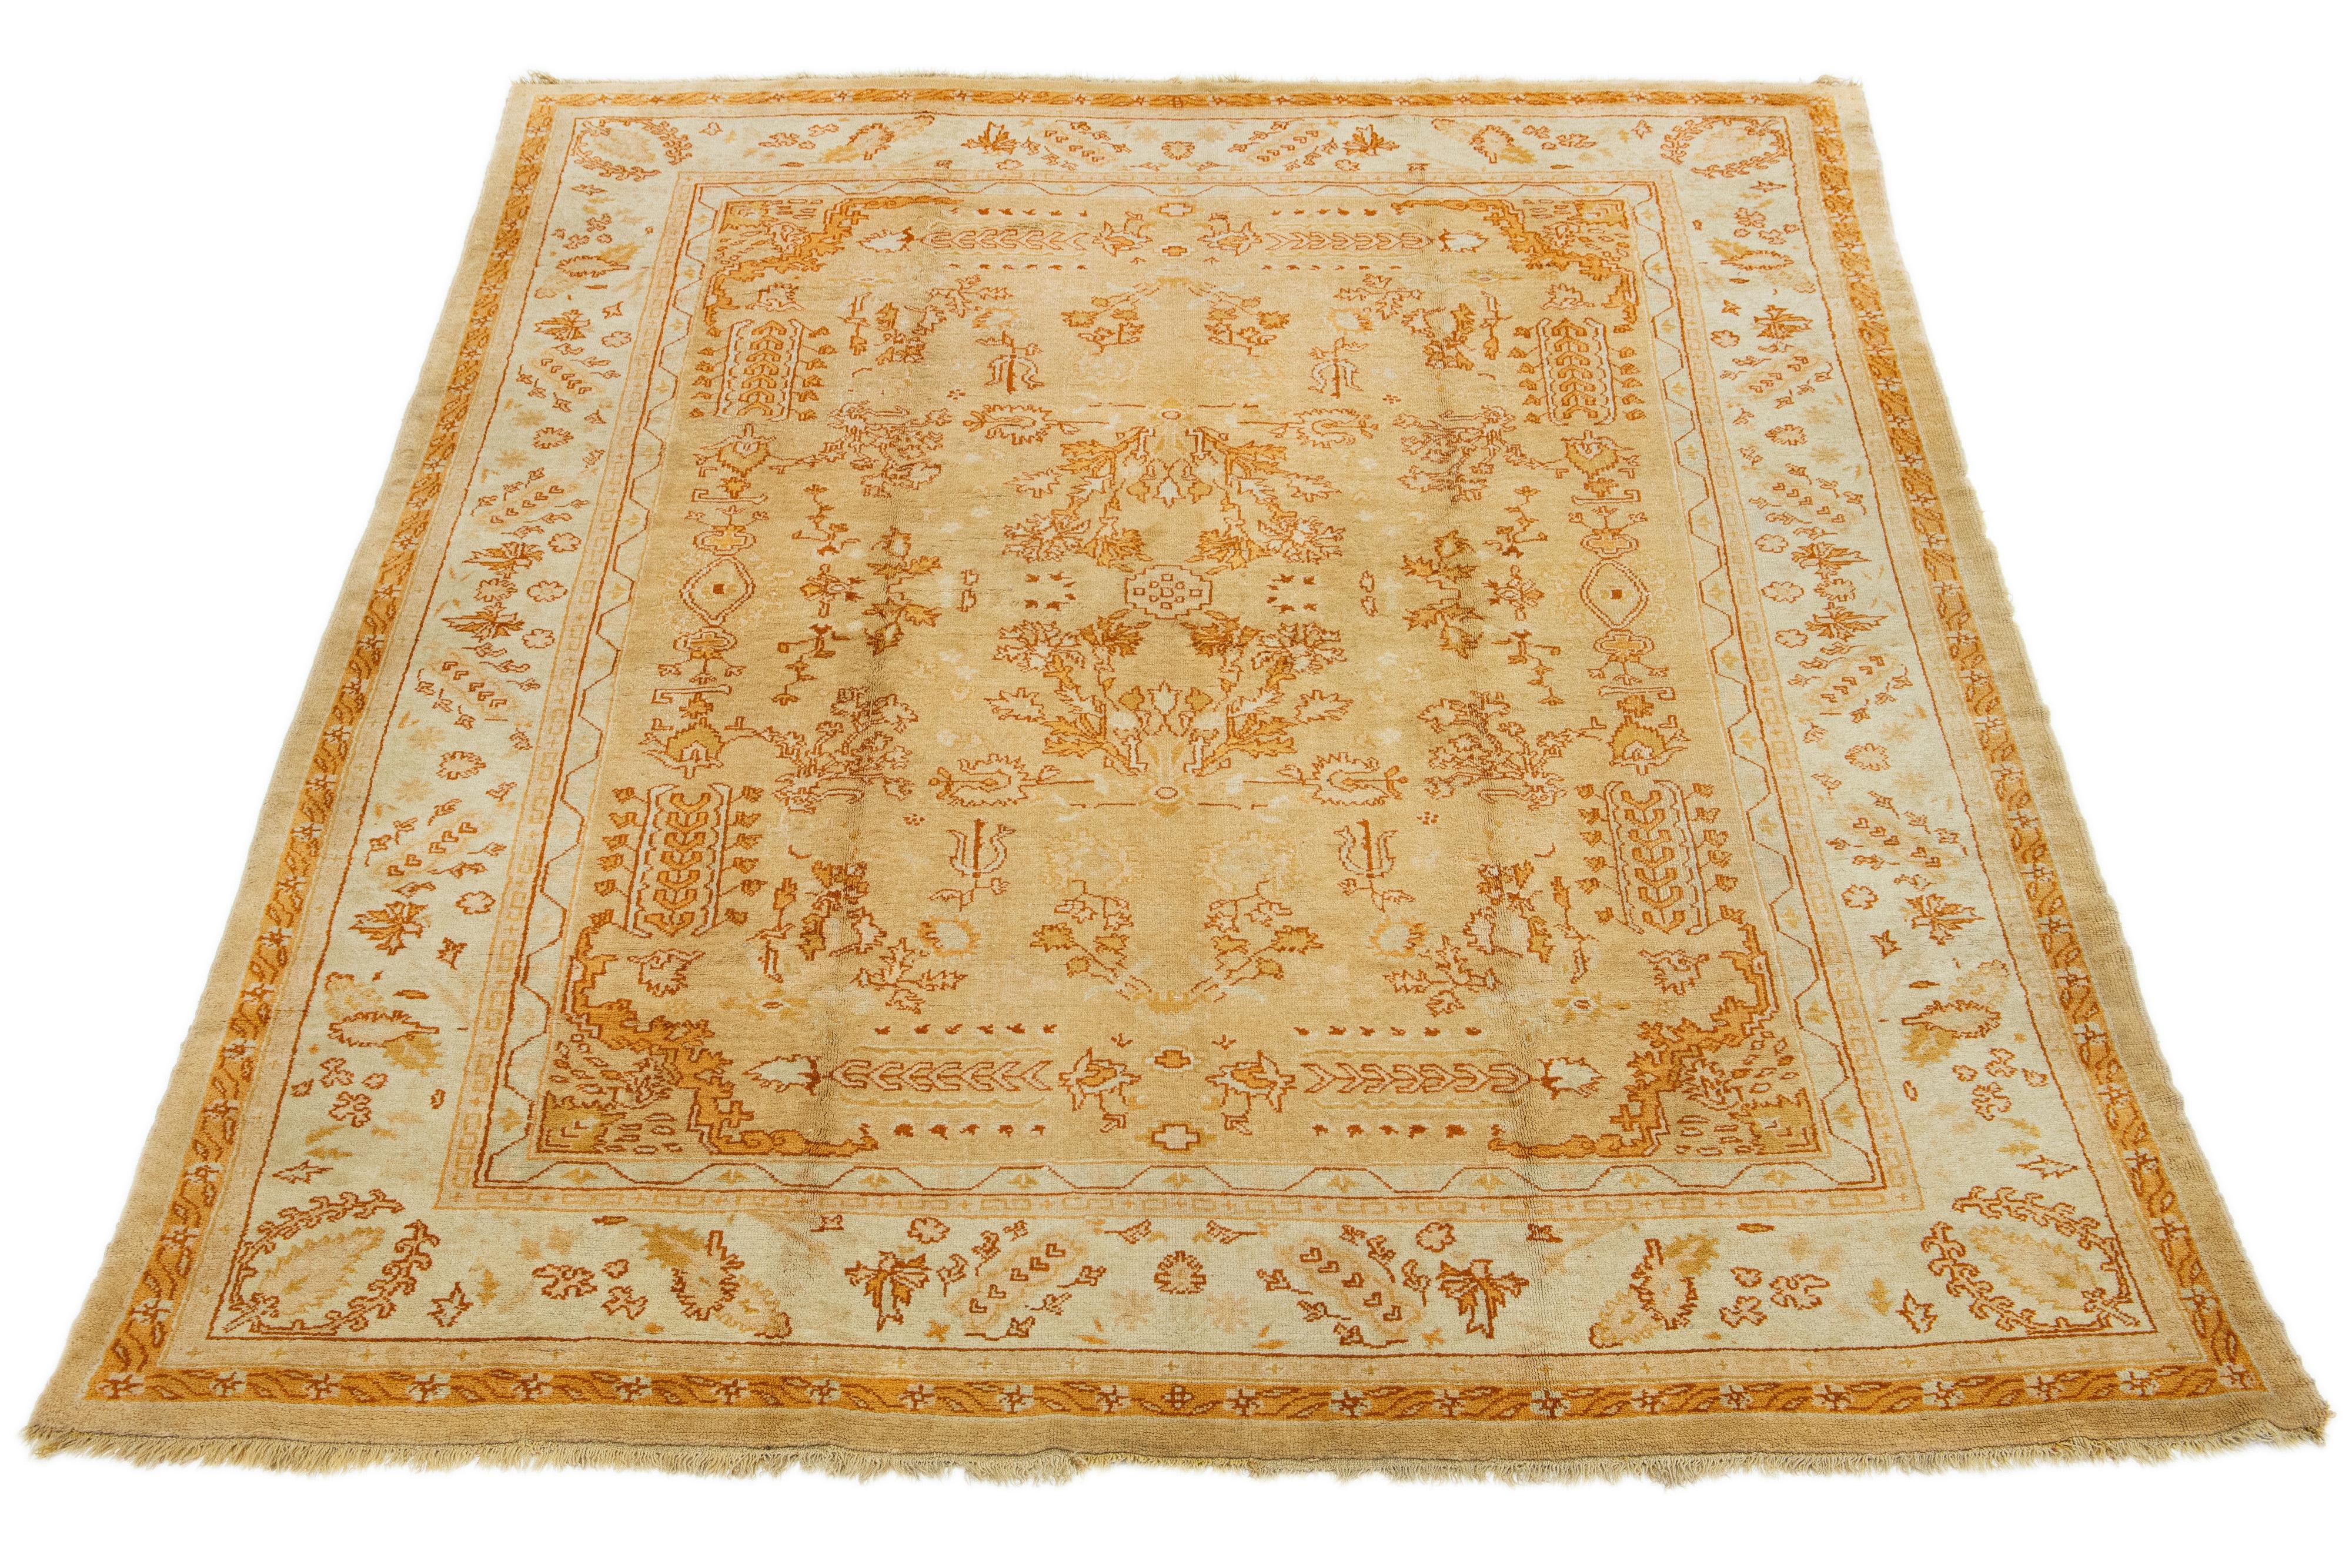 Einzigartiger türkischer Oushak-Teppich. Handgeknüpft aus hochwertiger Wolle. Beigefarbenes Feld, hellblaue Bordüre, lebhaftes Blumenmuster mit orangefarbenen und goldenen Akzenten.

Dieser Teppich misst 9'5'' x 12'8''.